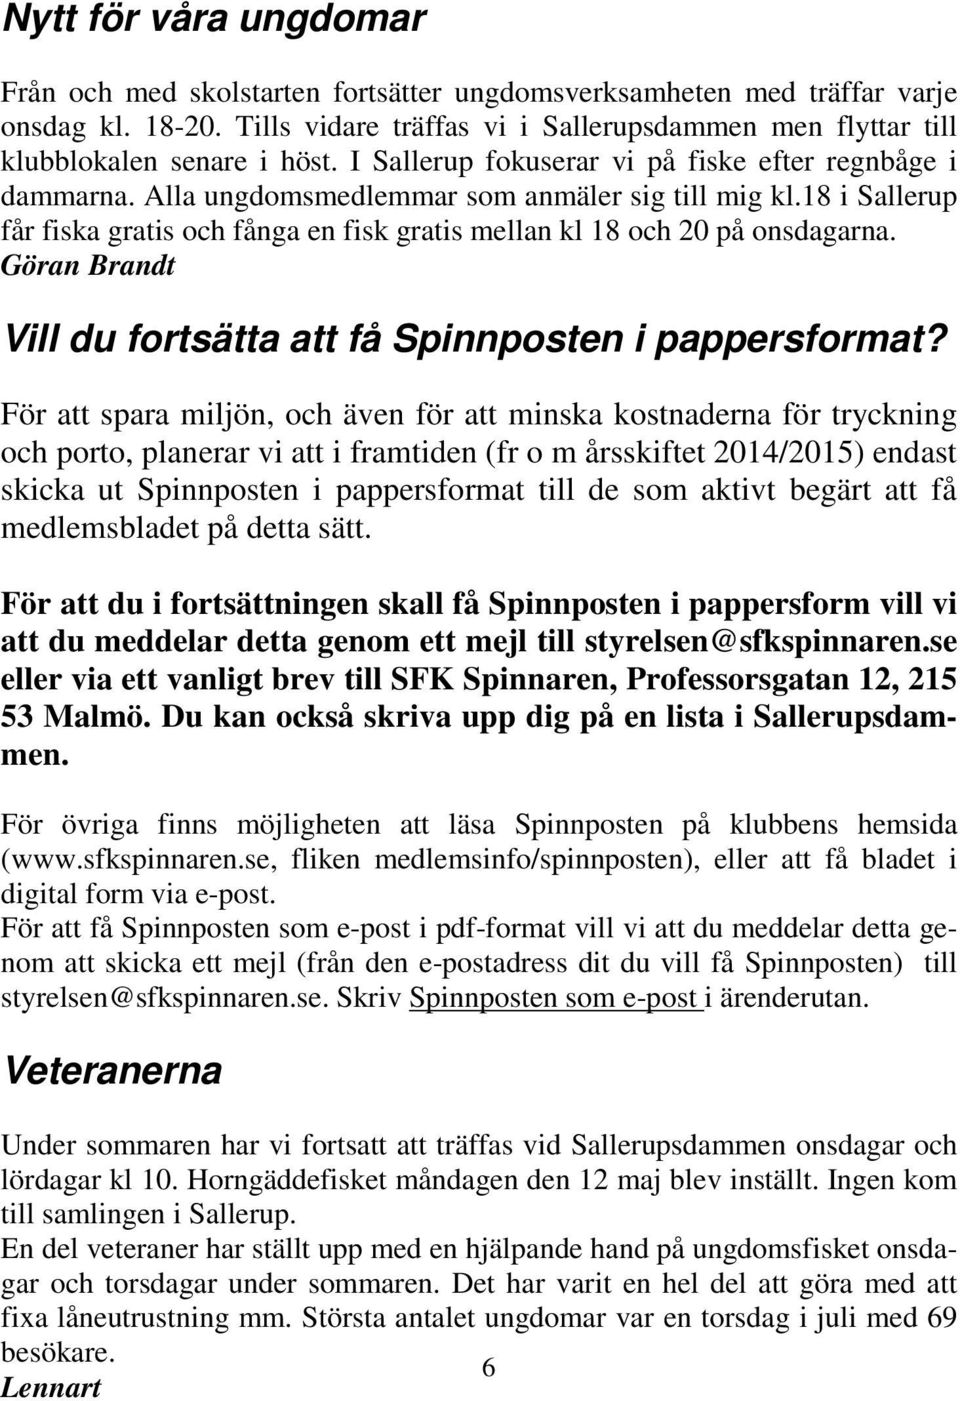 18 i Sallerup får fiska gratis och fånga en fisk gratis mellan kl 18 och 20 på onsdagarna. Göran Brandt Vill du fortsätta att få Spinnposten i pappersformat?